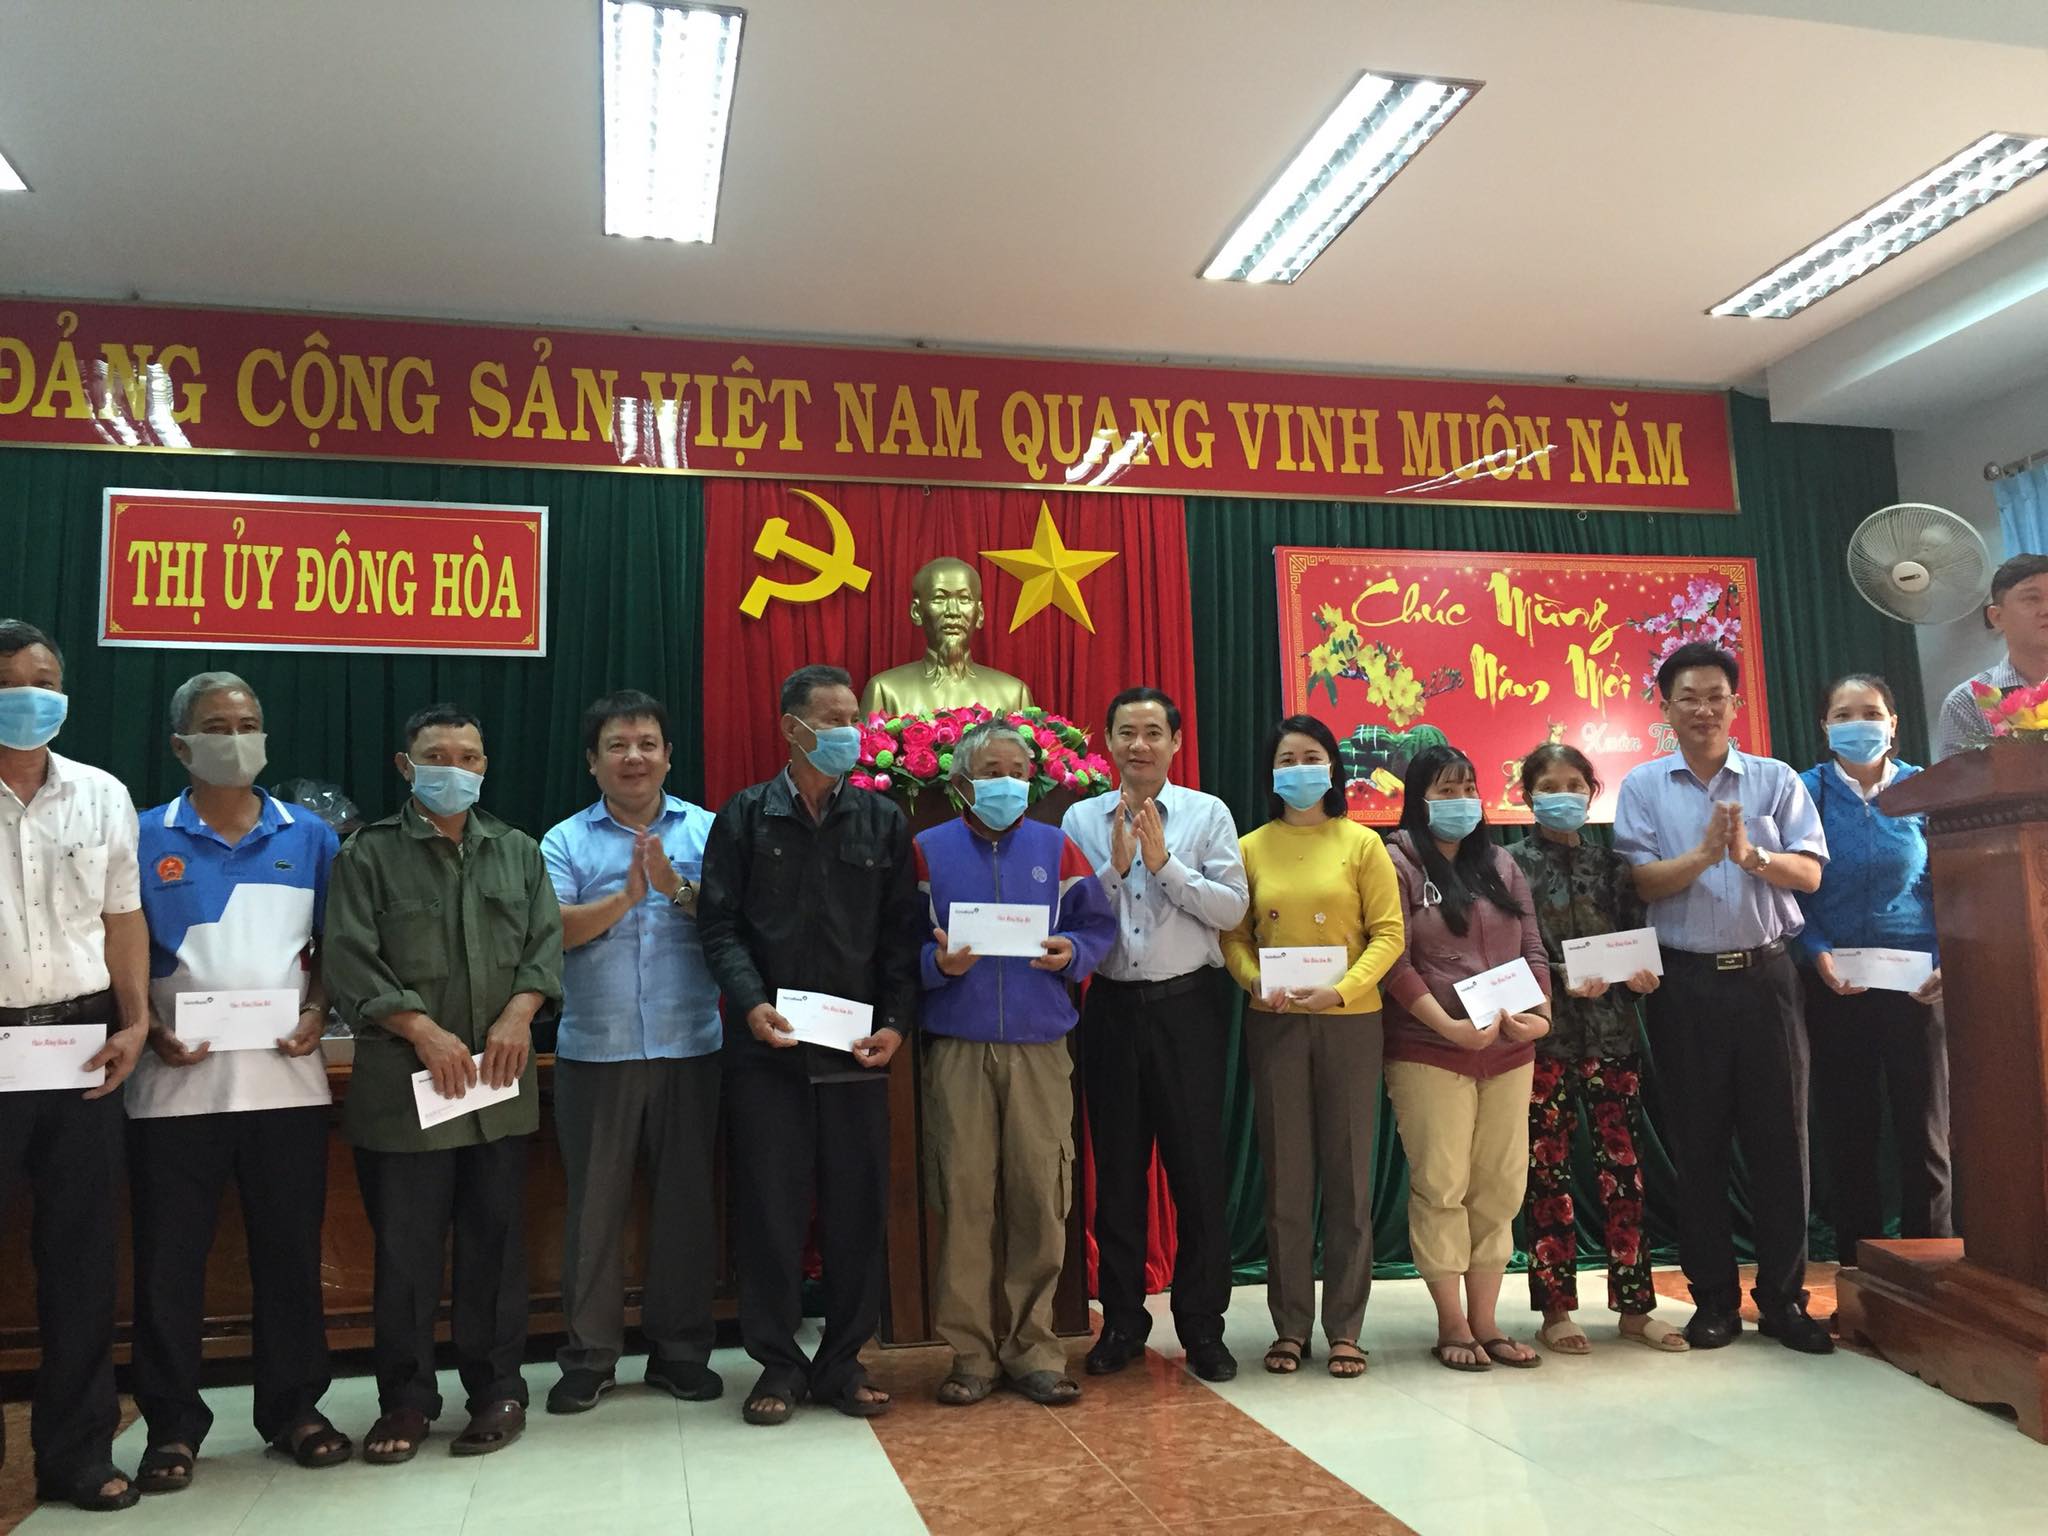 Đồng chí Nguyễn Thái Học, Phó trưởng Ban Nội chính Trung ương tặng quà cho các gia đình có hoàn cảnh khó khăn tại Thị ủy Đông Hòa